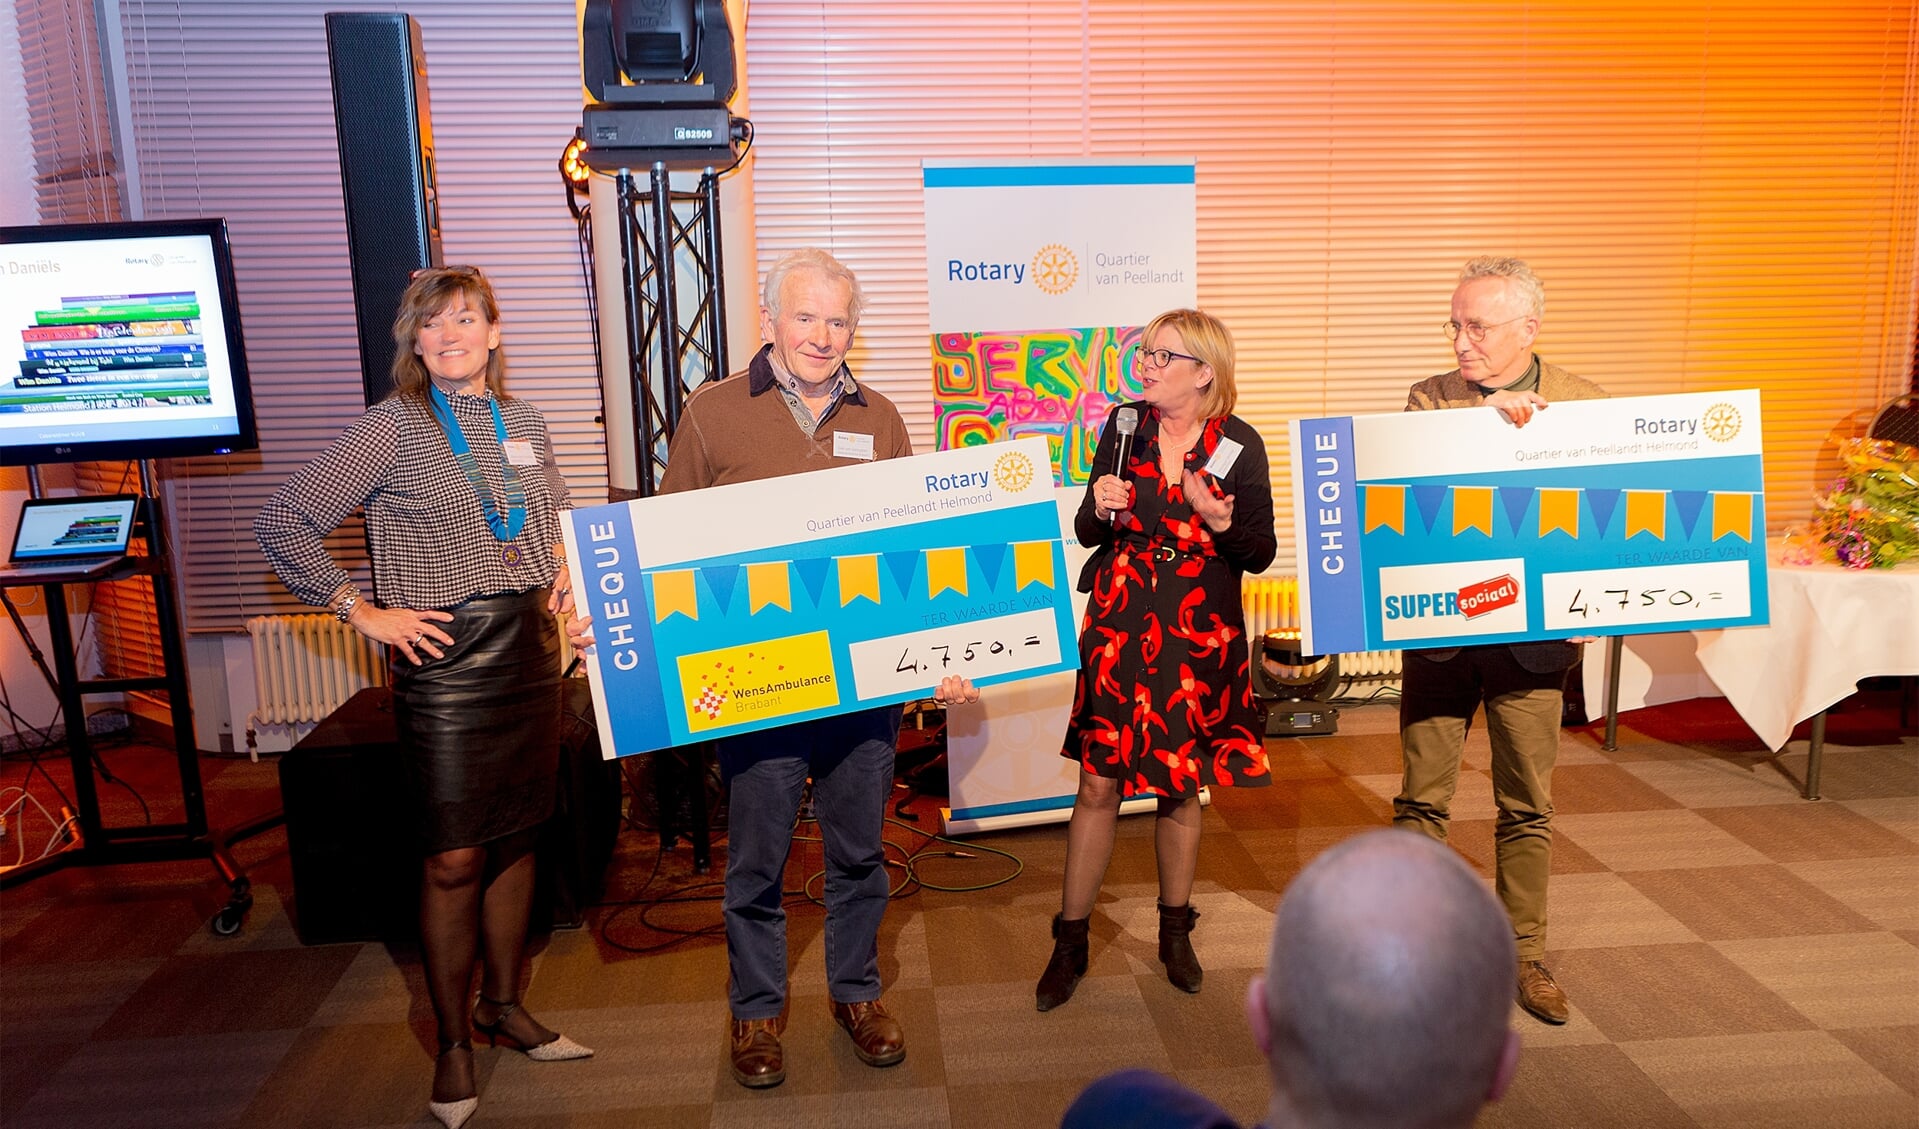 Giel van Genuchten (Stg. Wensambulance Brabant) en Joop van Stiphout (SuperSociaal) nemen de cheques in ontvangst van Rotary Quartier van Peellandt